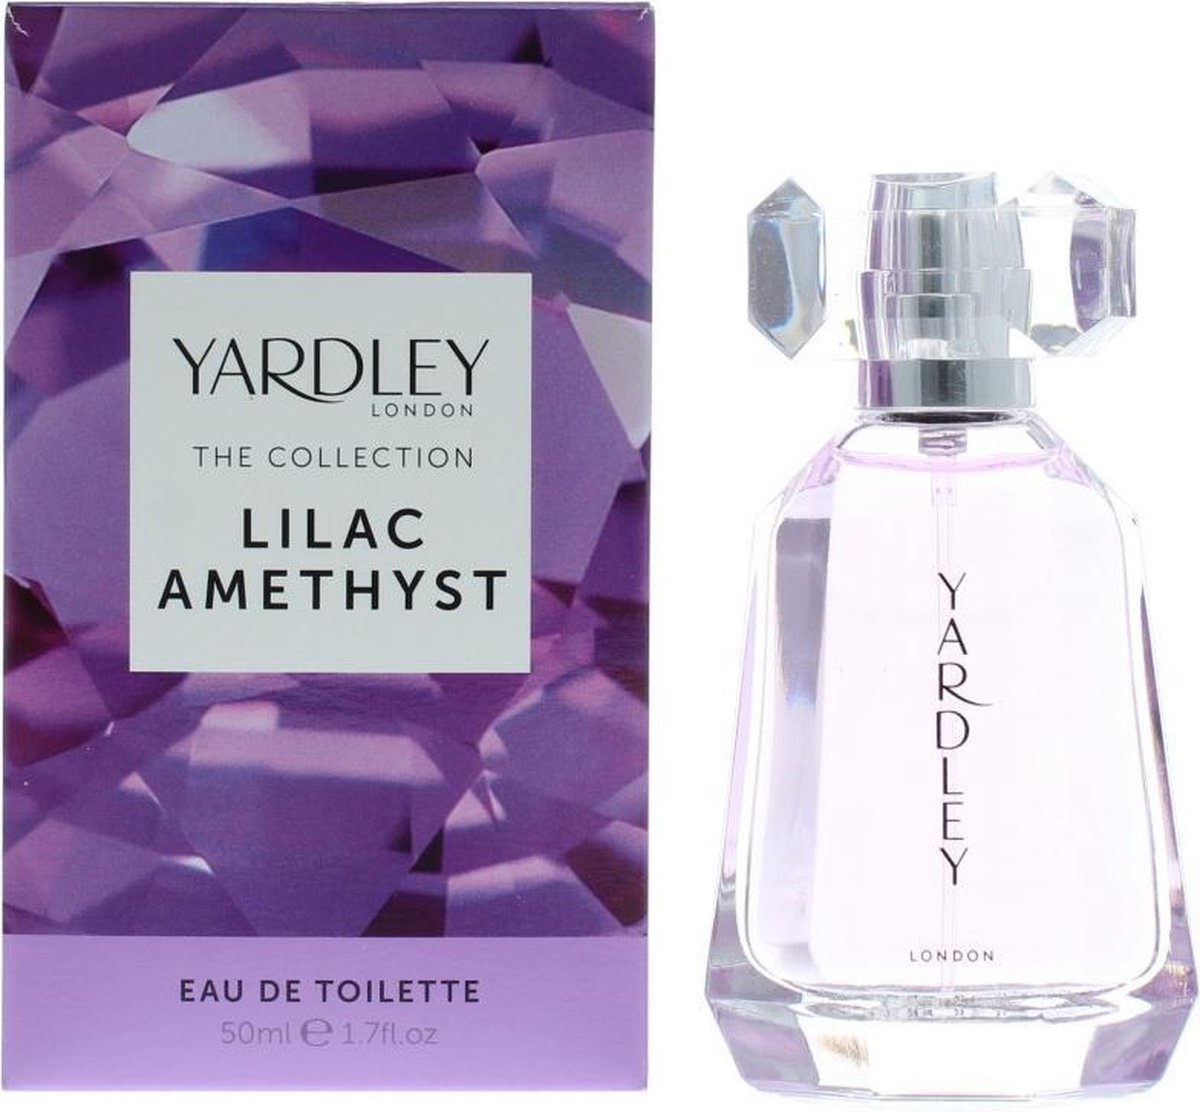 Yardley The Collection Lilac Amethyst Eau De Toilette 50ml